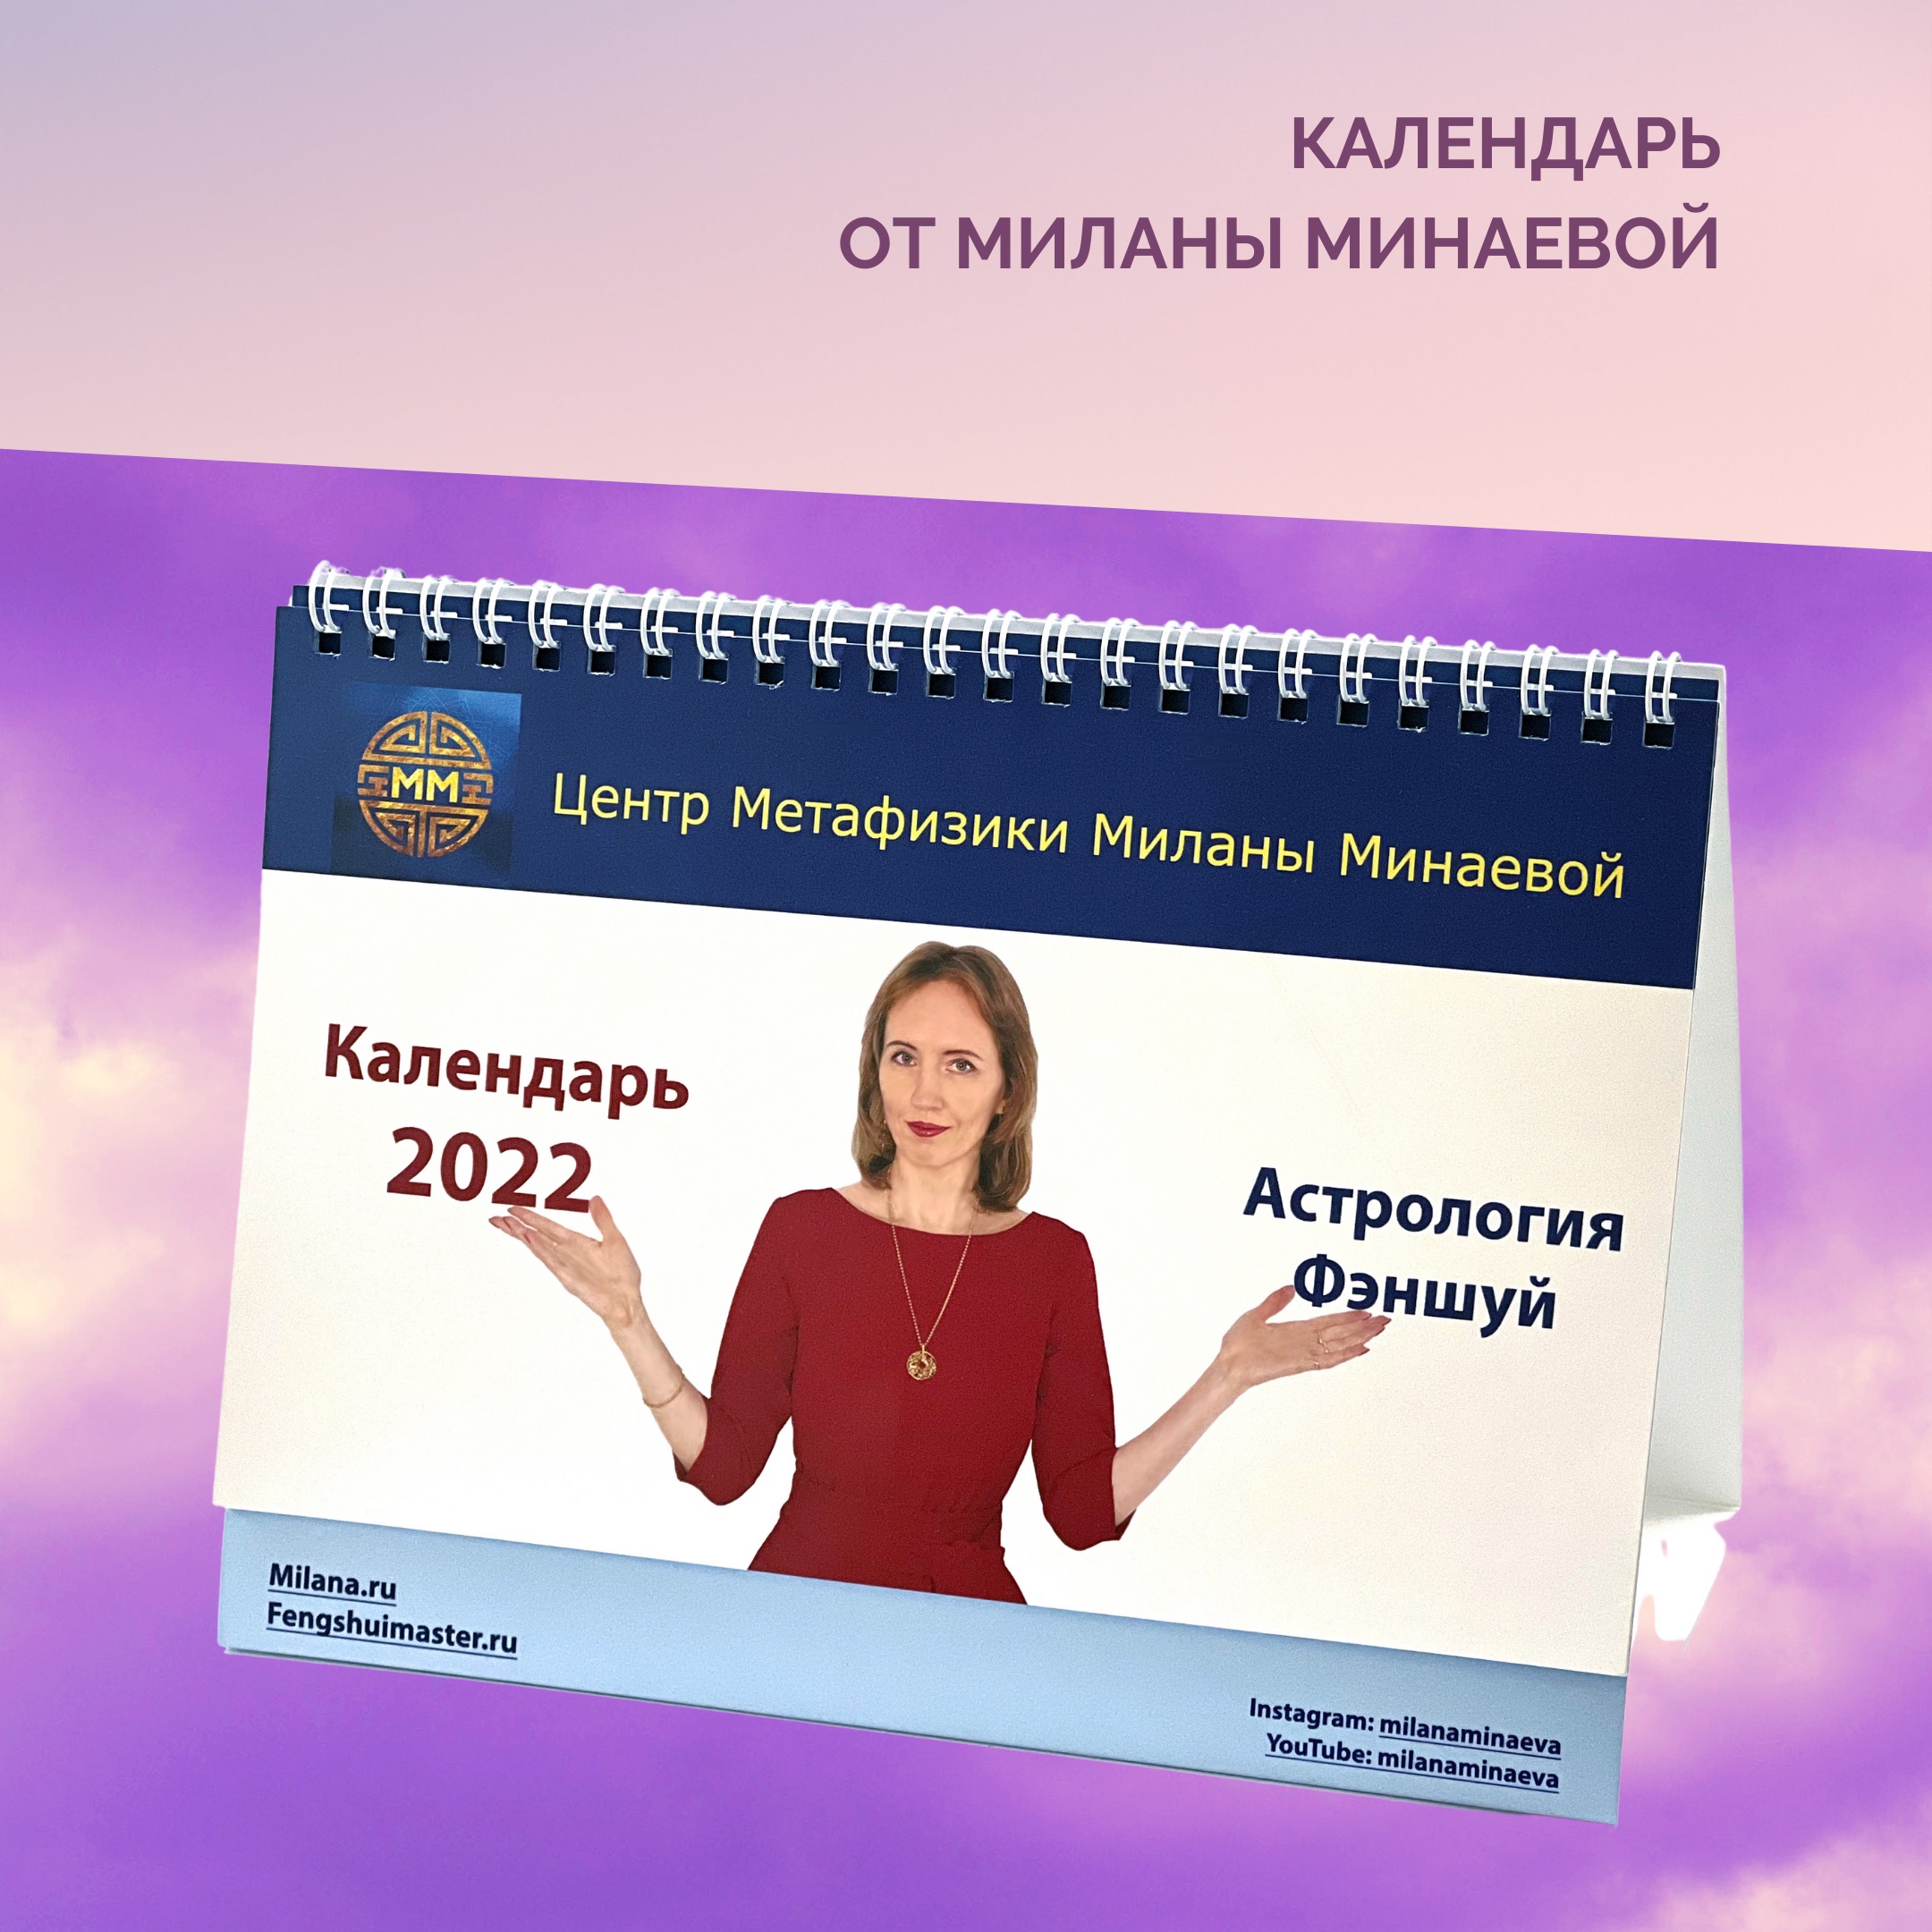 Календарь по Астрологии и Фэншуй • Milana.Ru